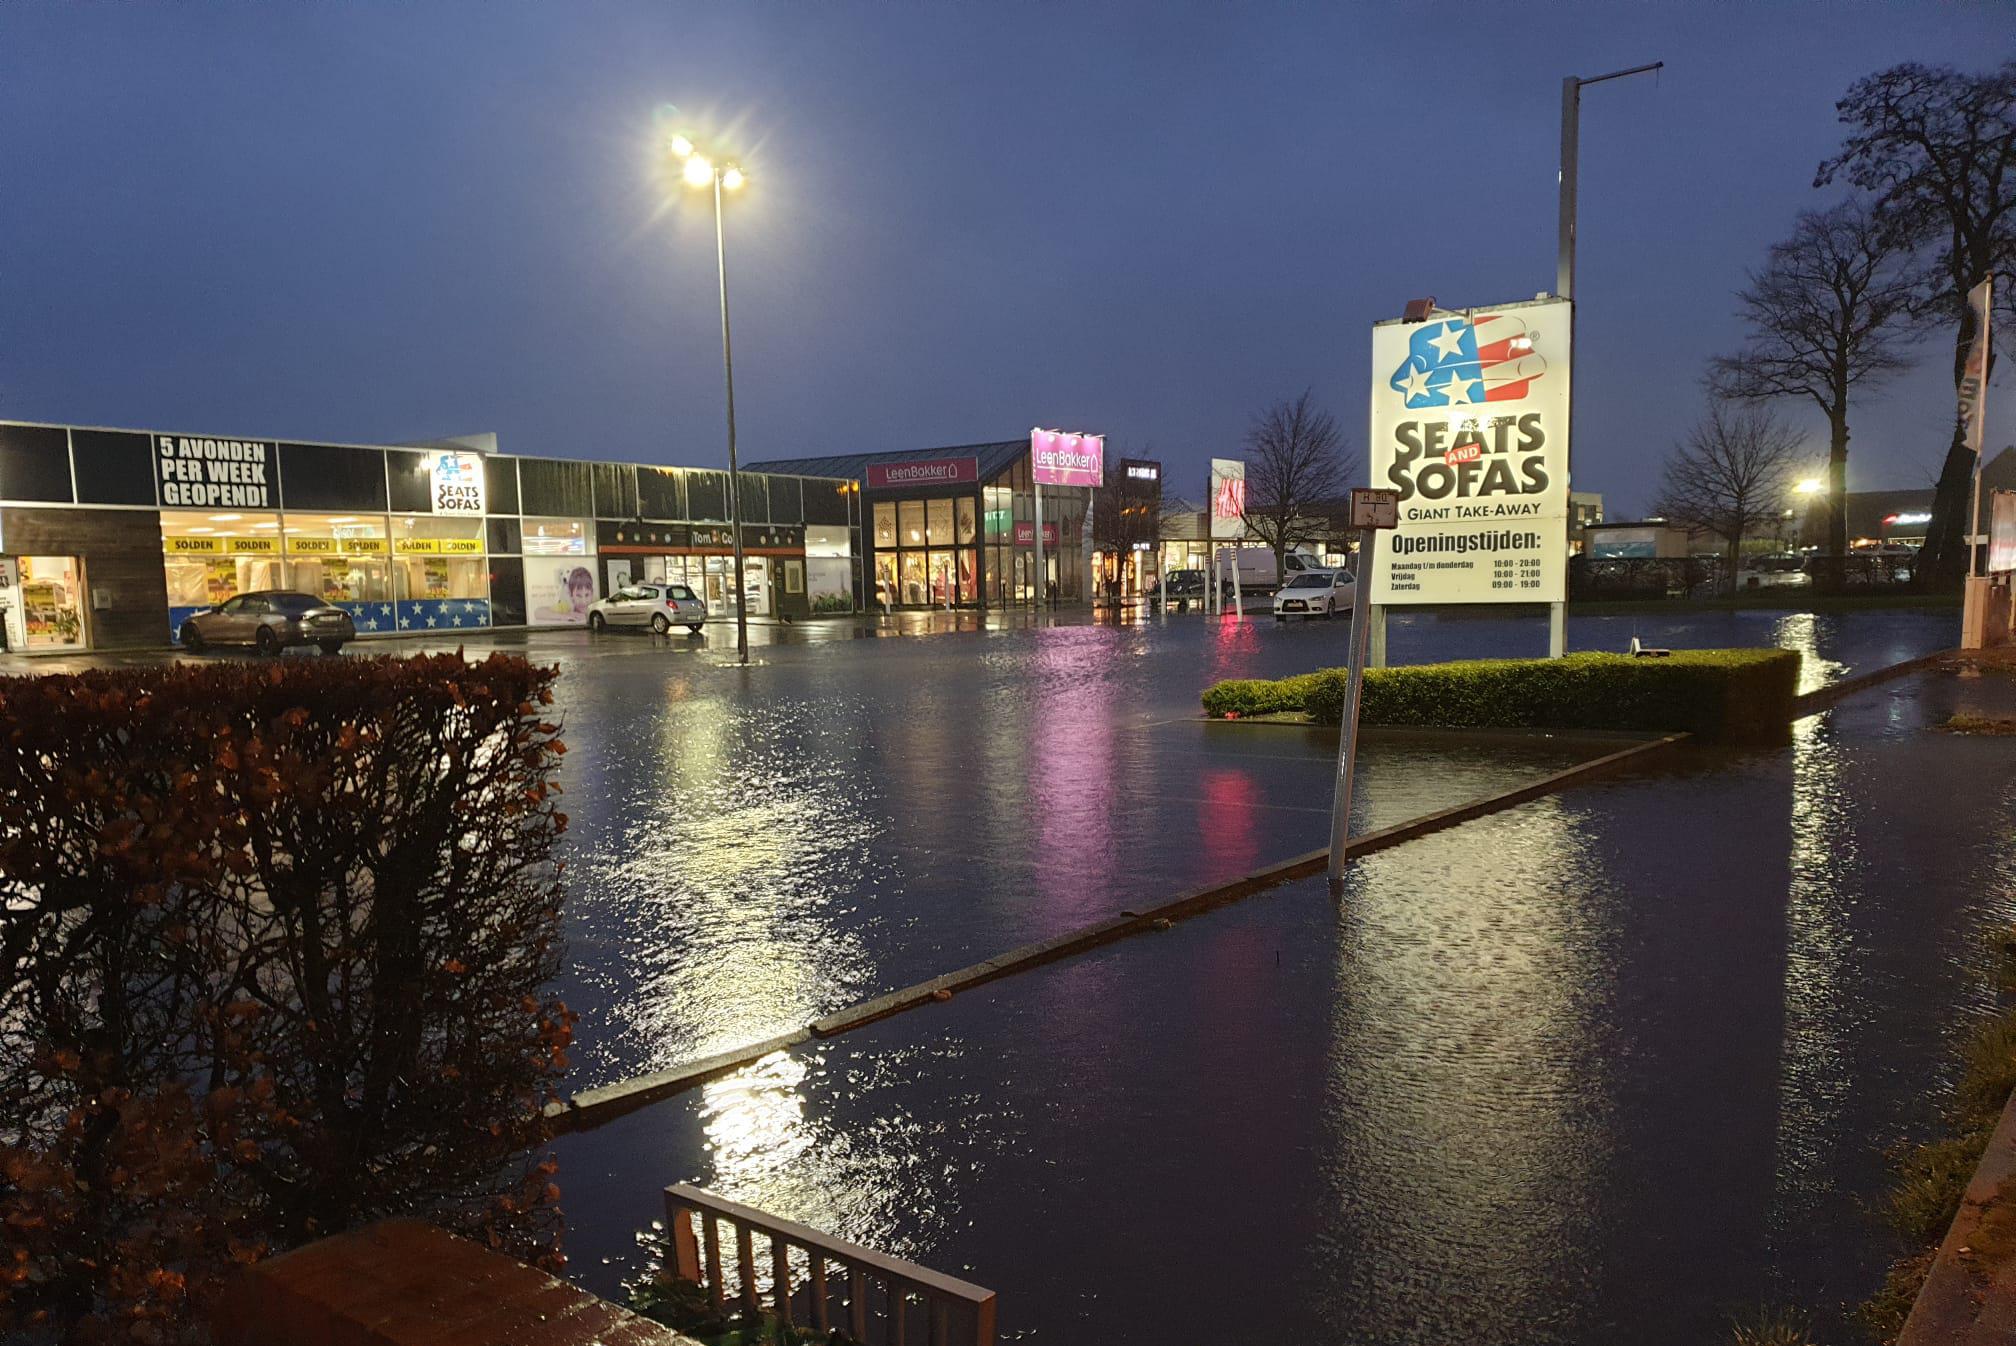 Konijn regering stuiten op Hevige regenval zet bedrijvenparking Seats & Sofas opnieuw blank (Lochristi)  | Het Nieuwsblad Mobile